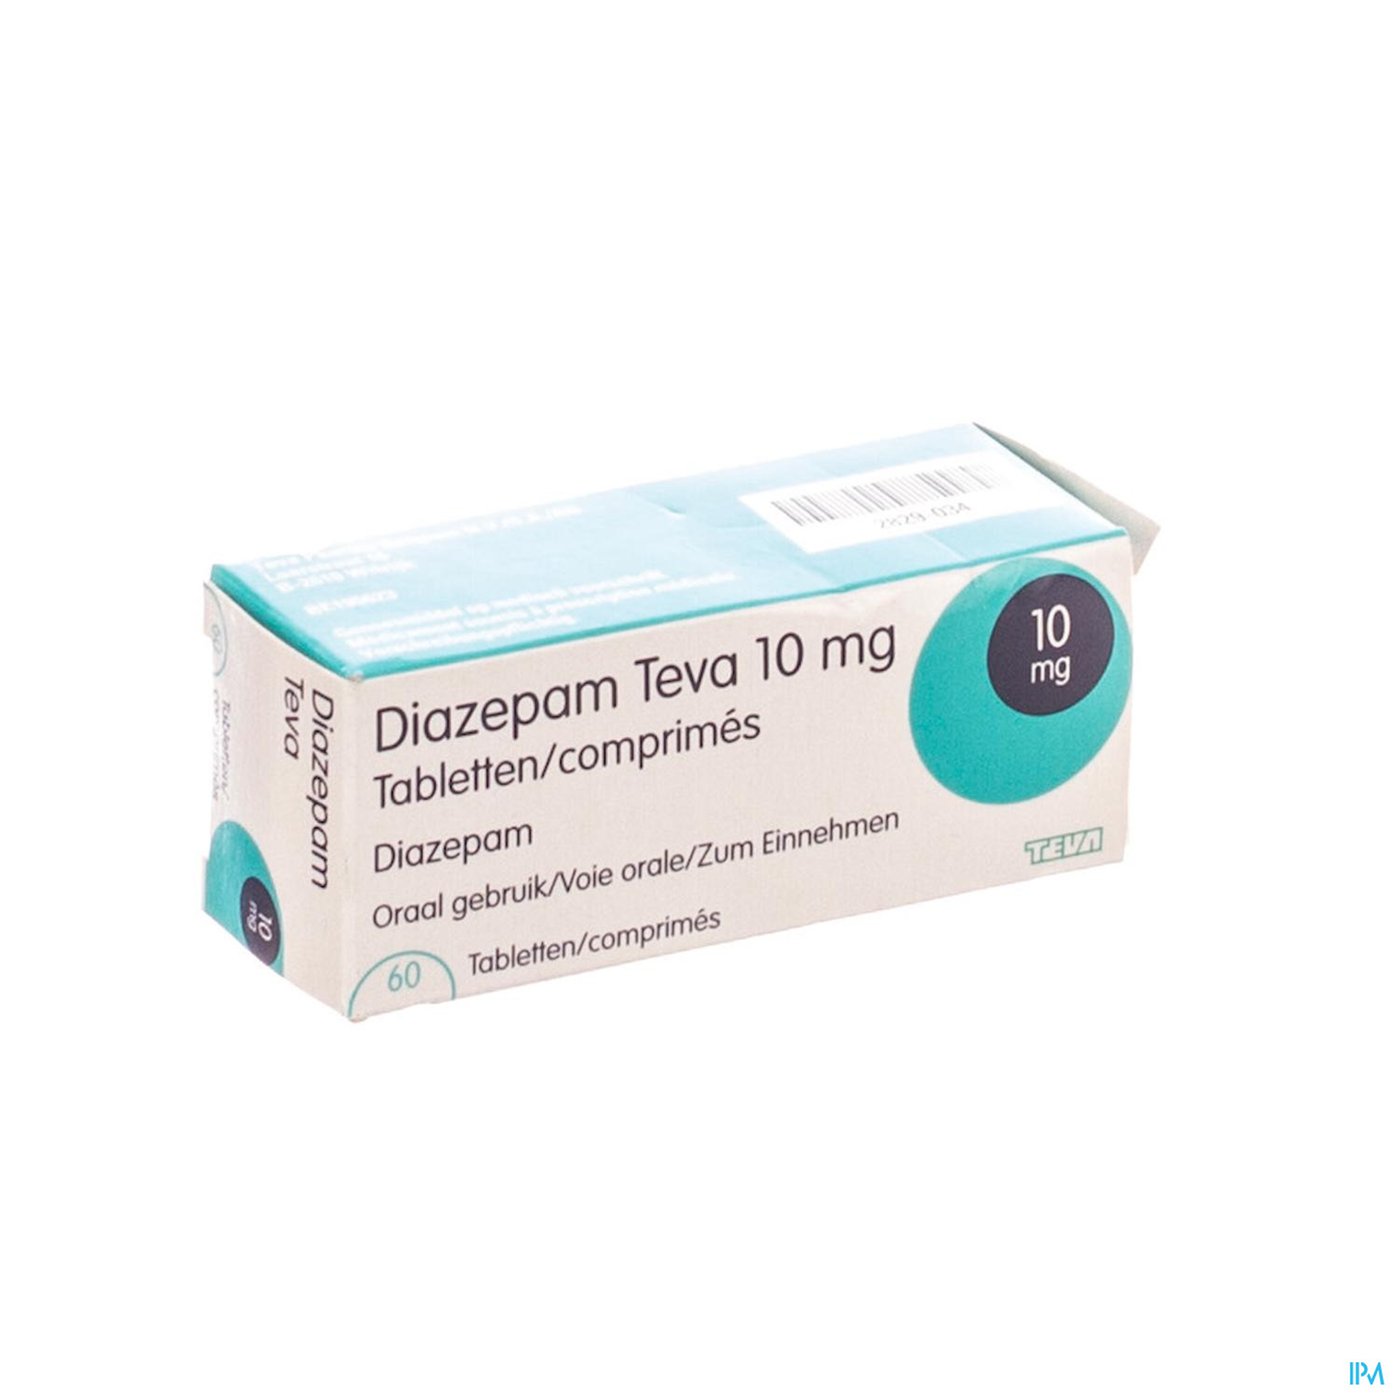 Diazepam Teva Comp 60x10mg packshot